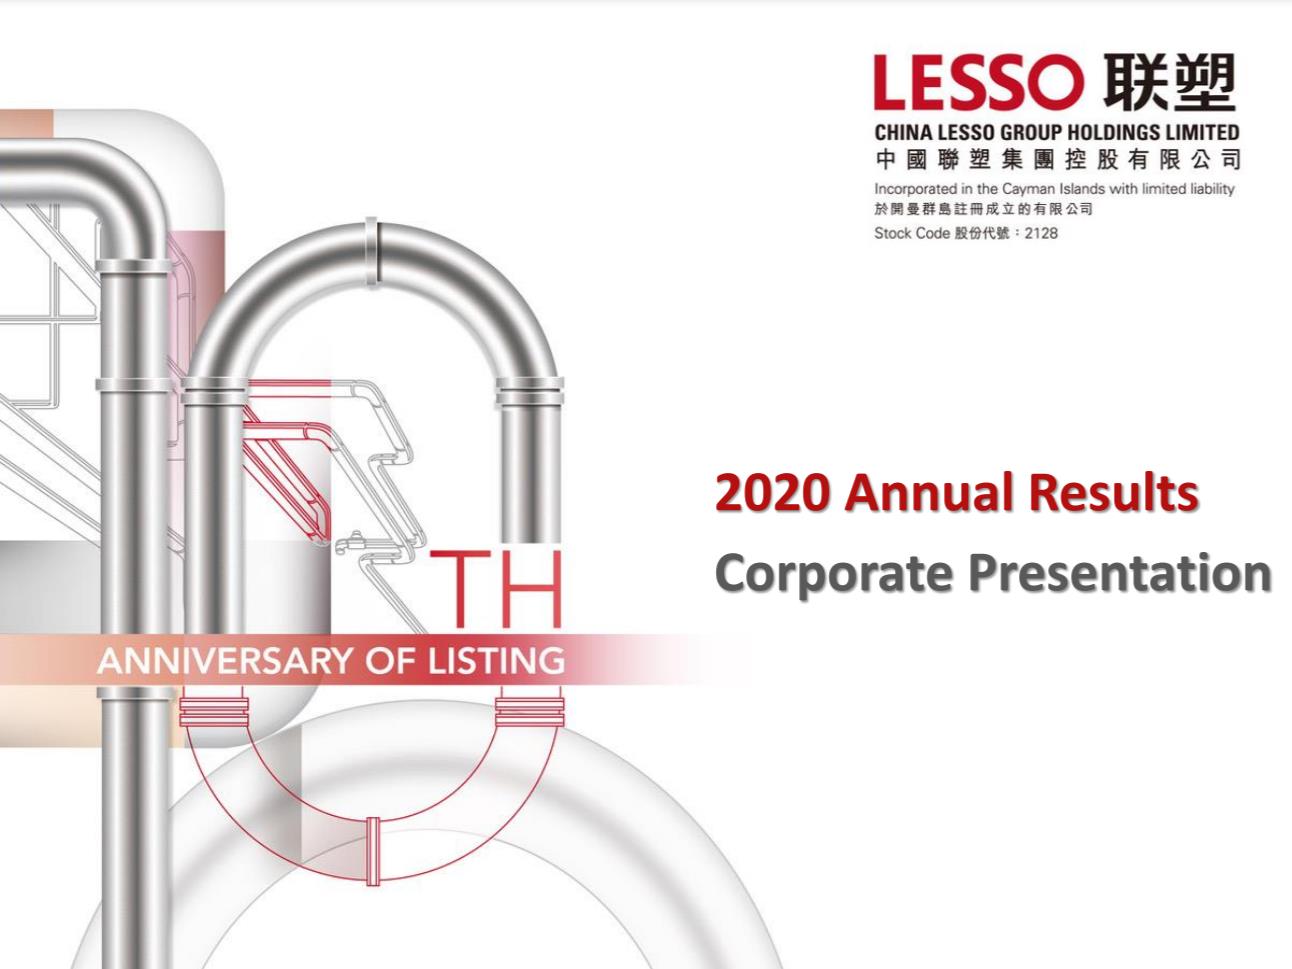 Lesso 2020 Annual Results Corporate Presentation